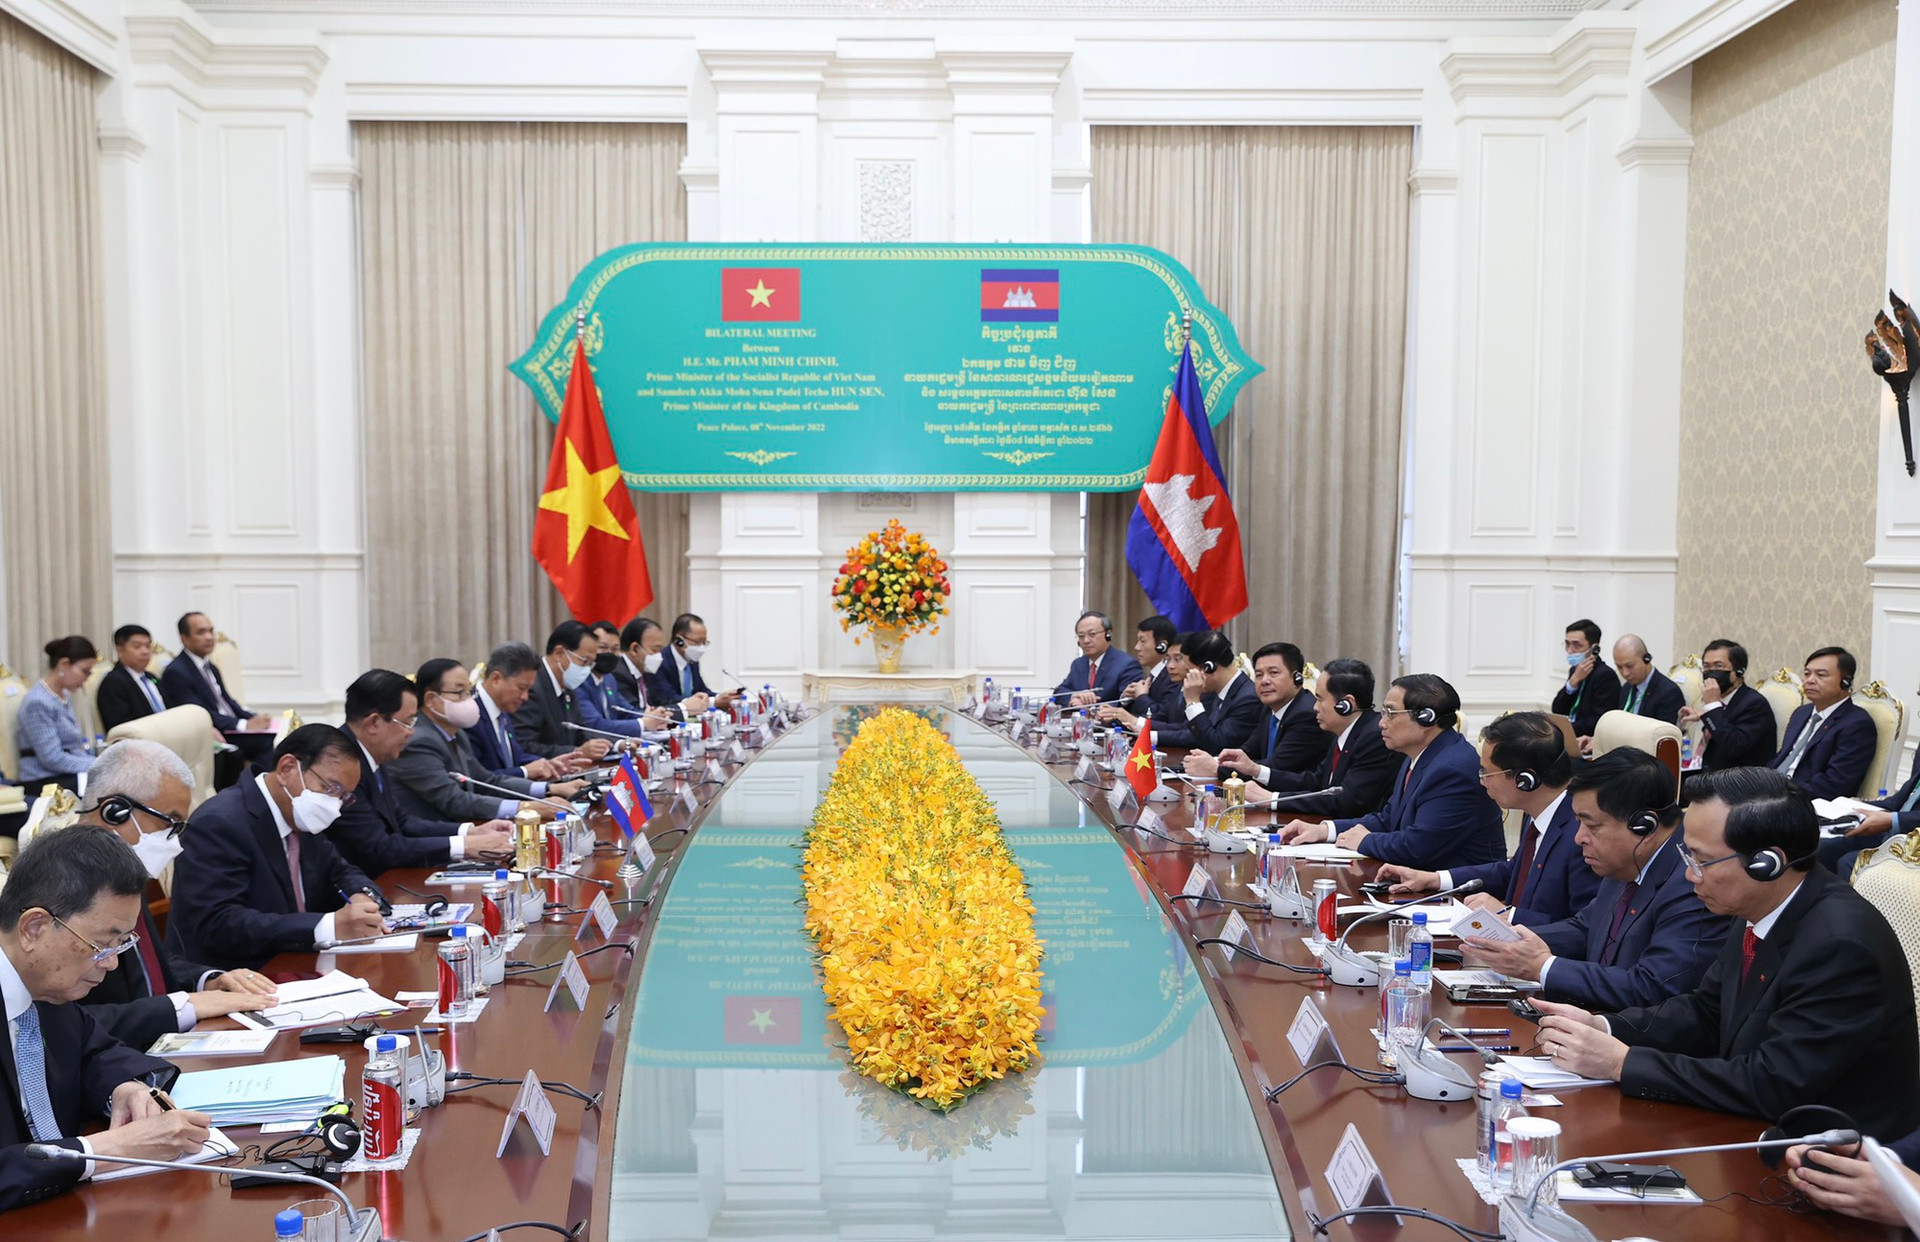 Chùm ảnh: Lễ đón chính thức Thủ tướng Phạm Minh Chính thăm Campuchia - Ảnh 11.